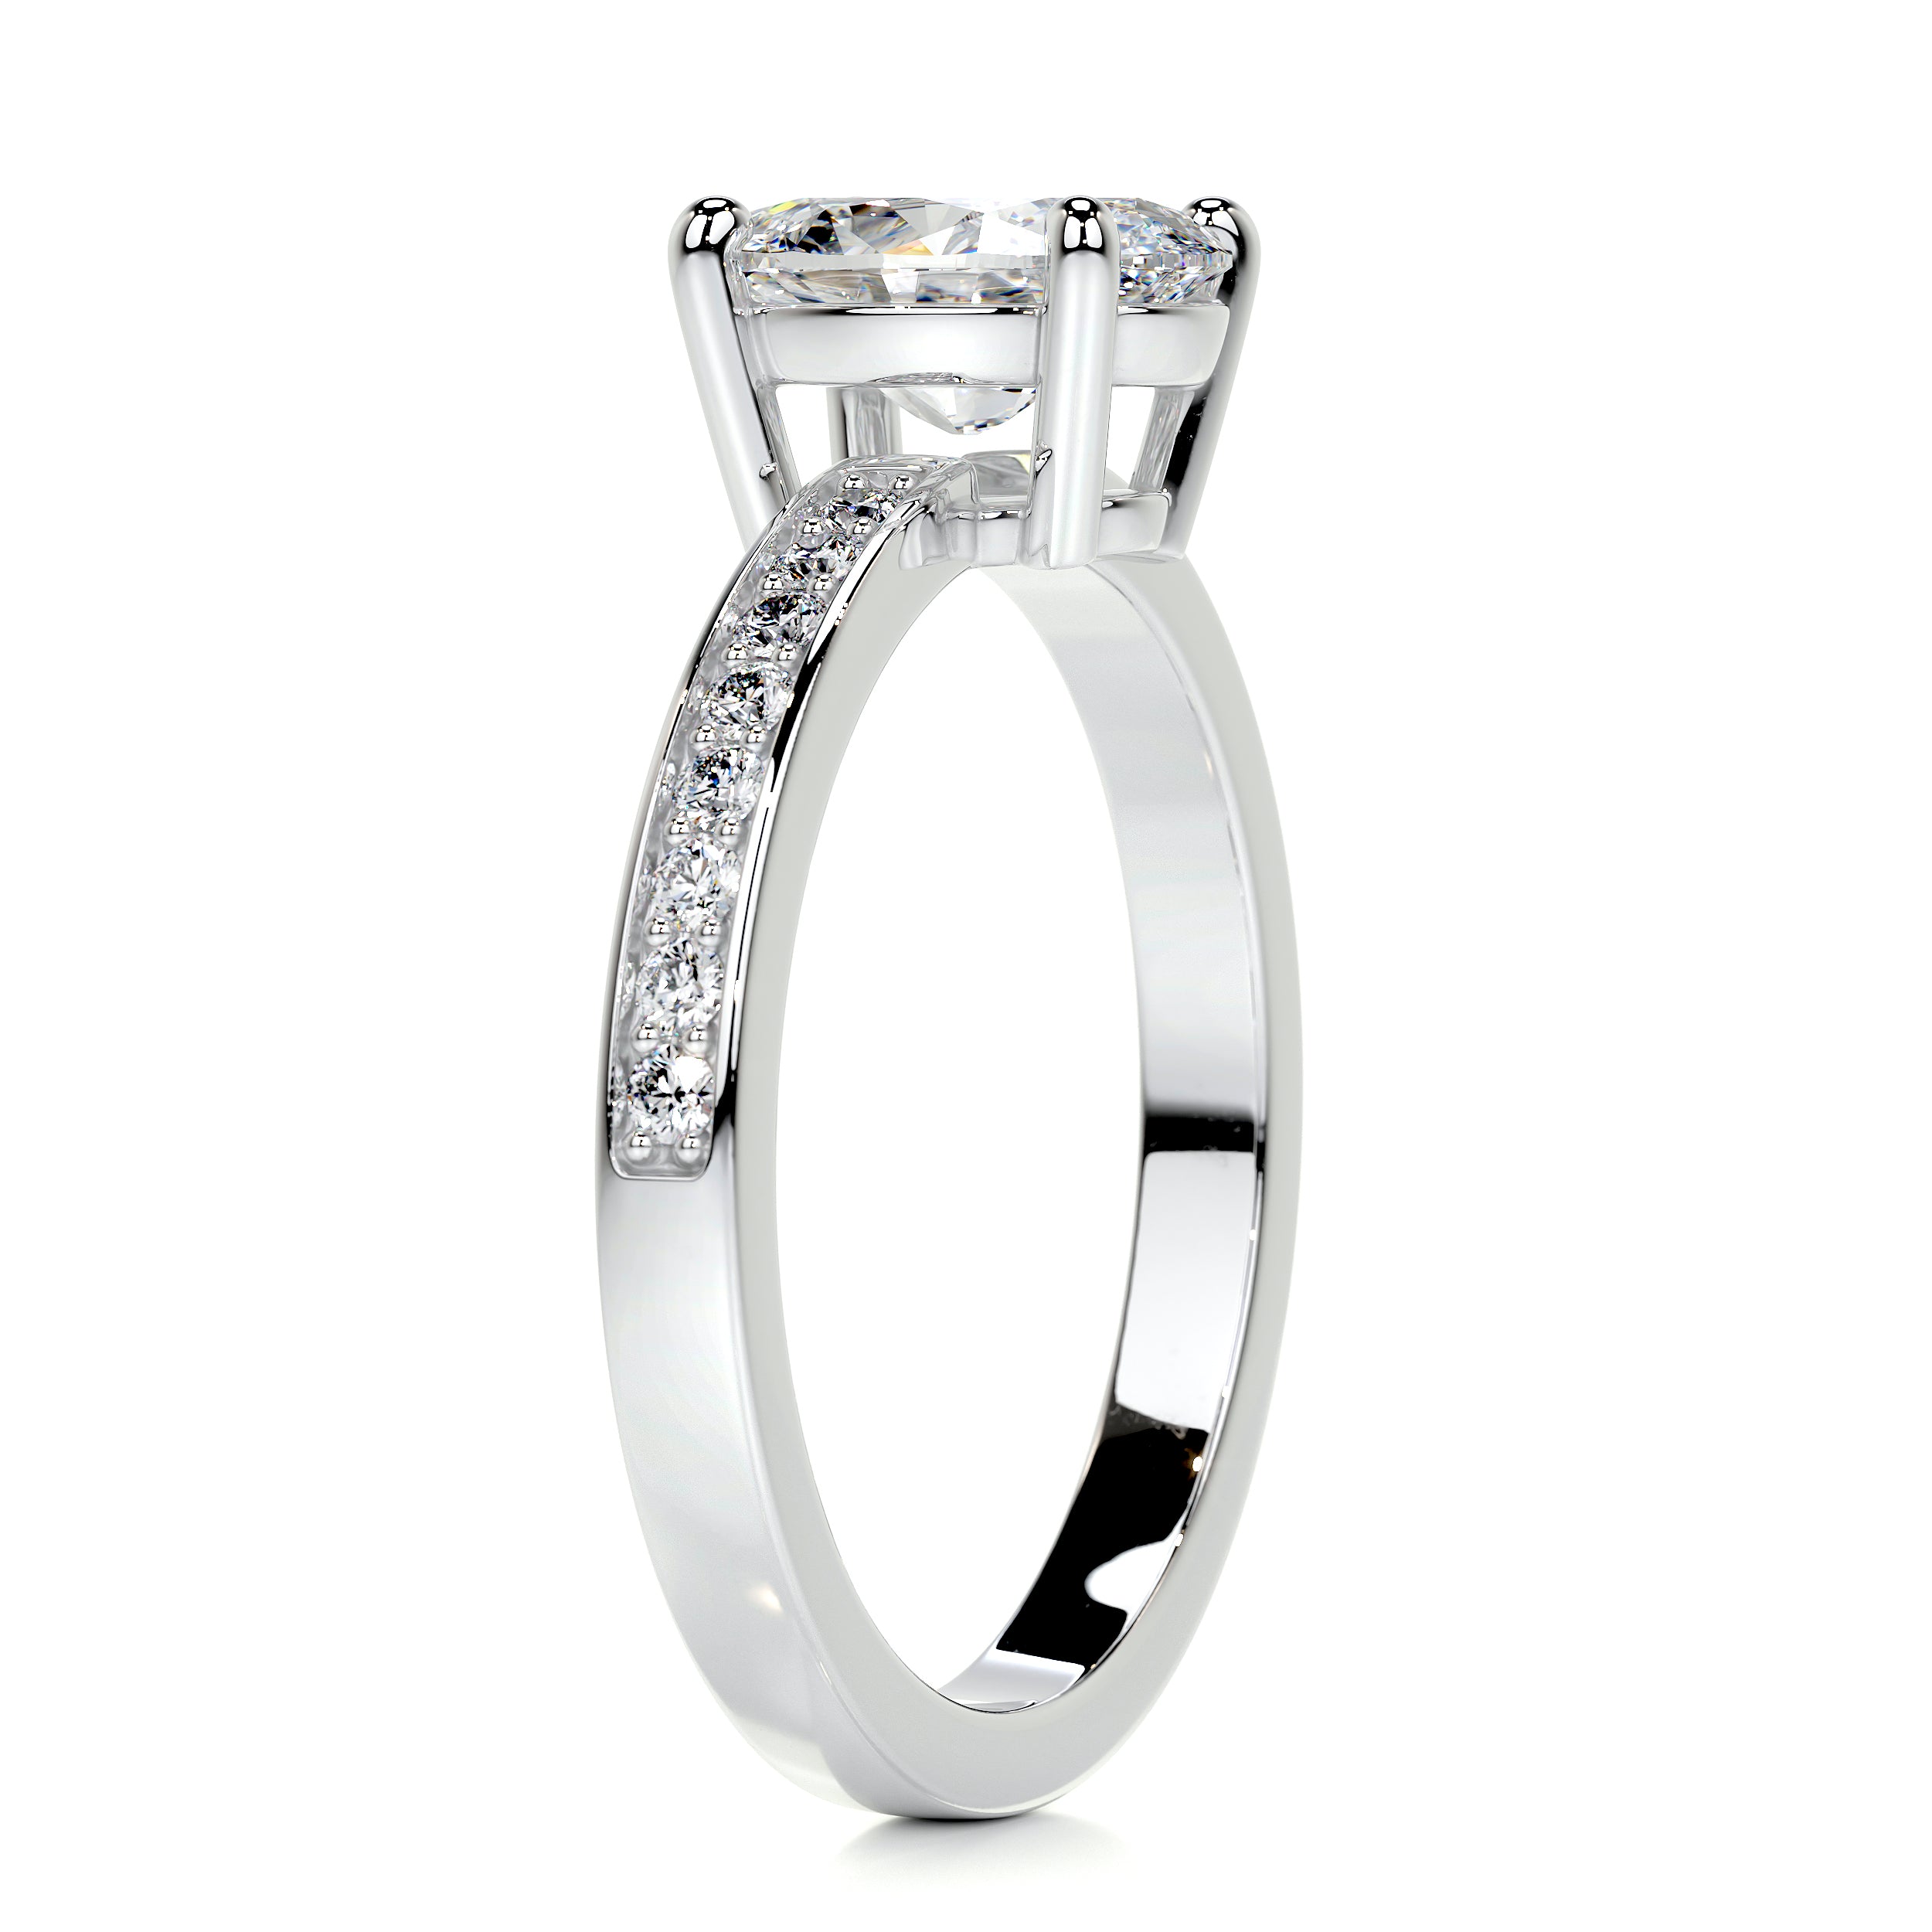 Giselle Diamond Engagement Ring -18K White Gold